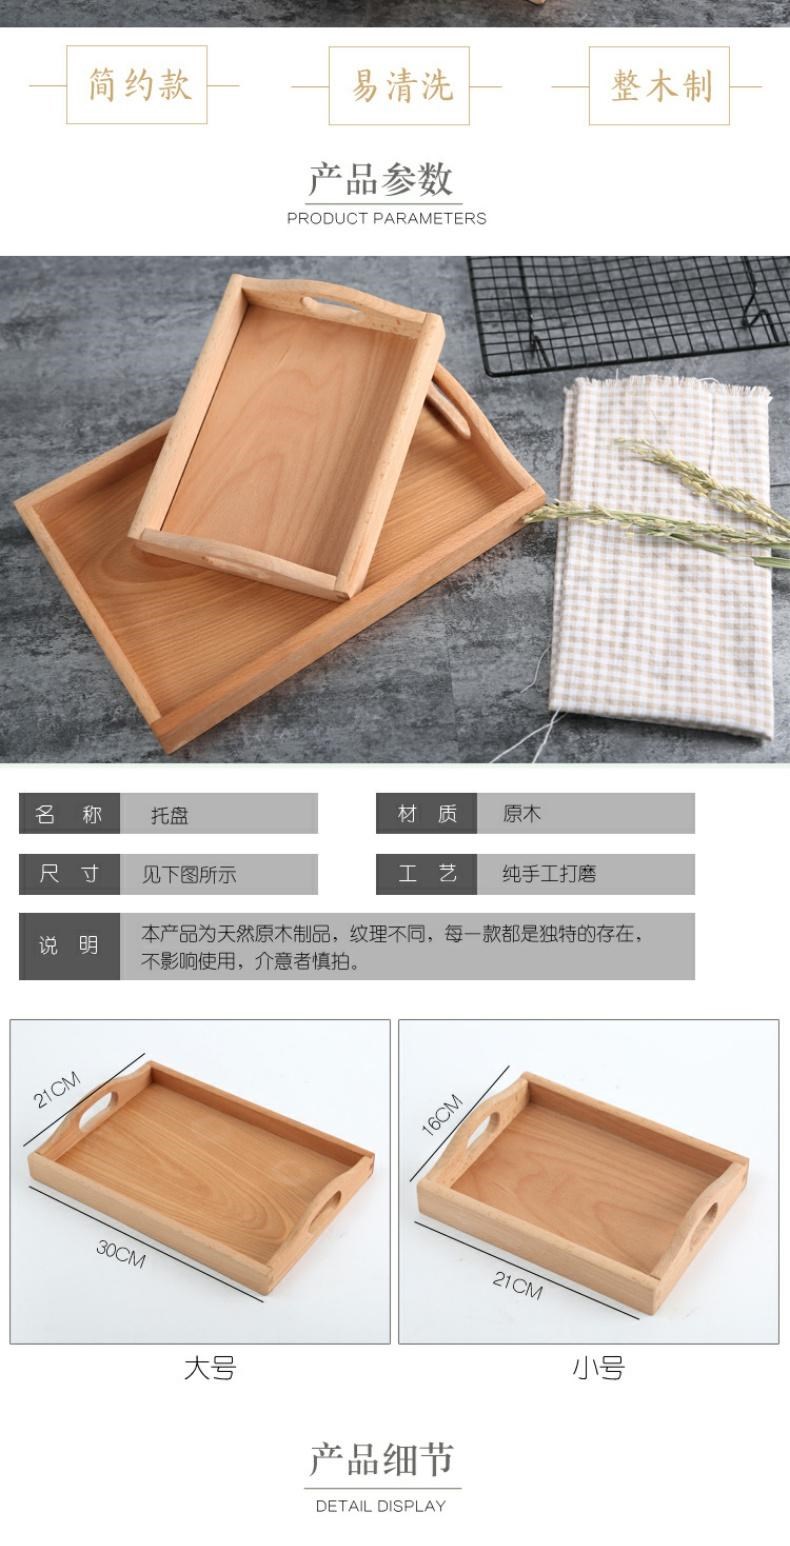 Khay gỗ đặc hai bên Trung Quốc, hình chữ nhật có tay cầm, khay trà, khay vuông gỗ sồi, đĩa ăn, đĩa gỗ bảo vệ môi trường - Tấm